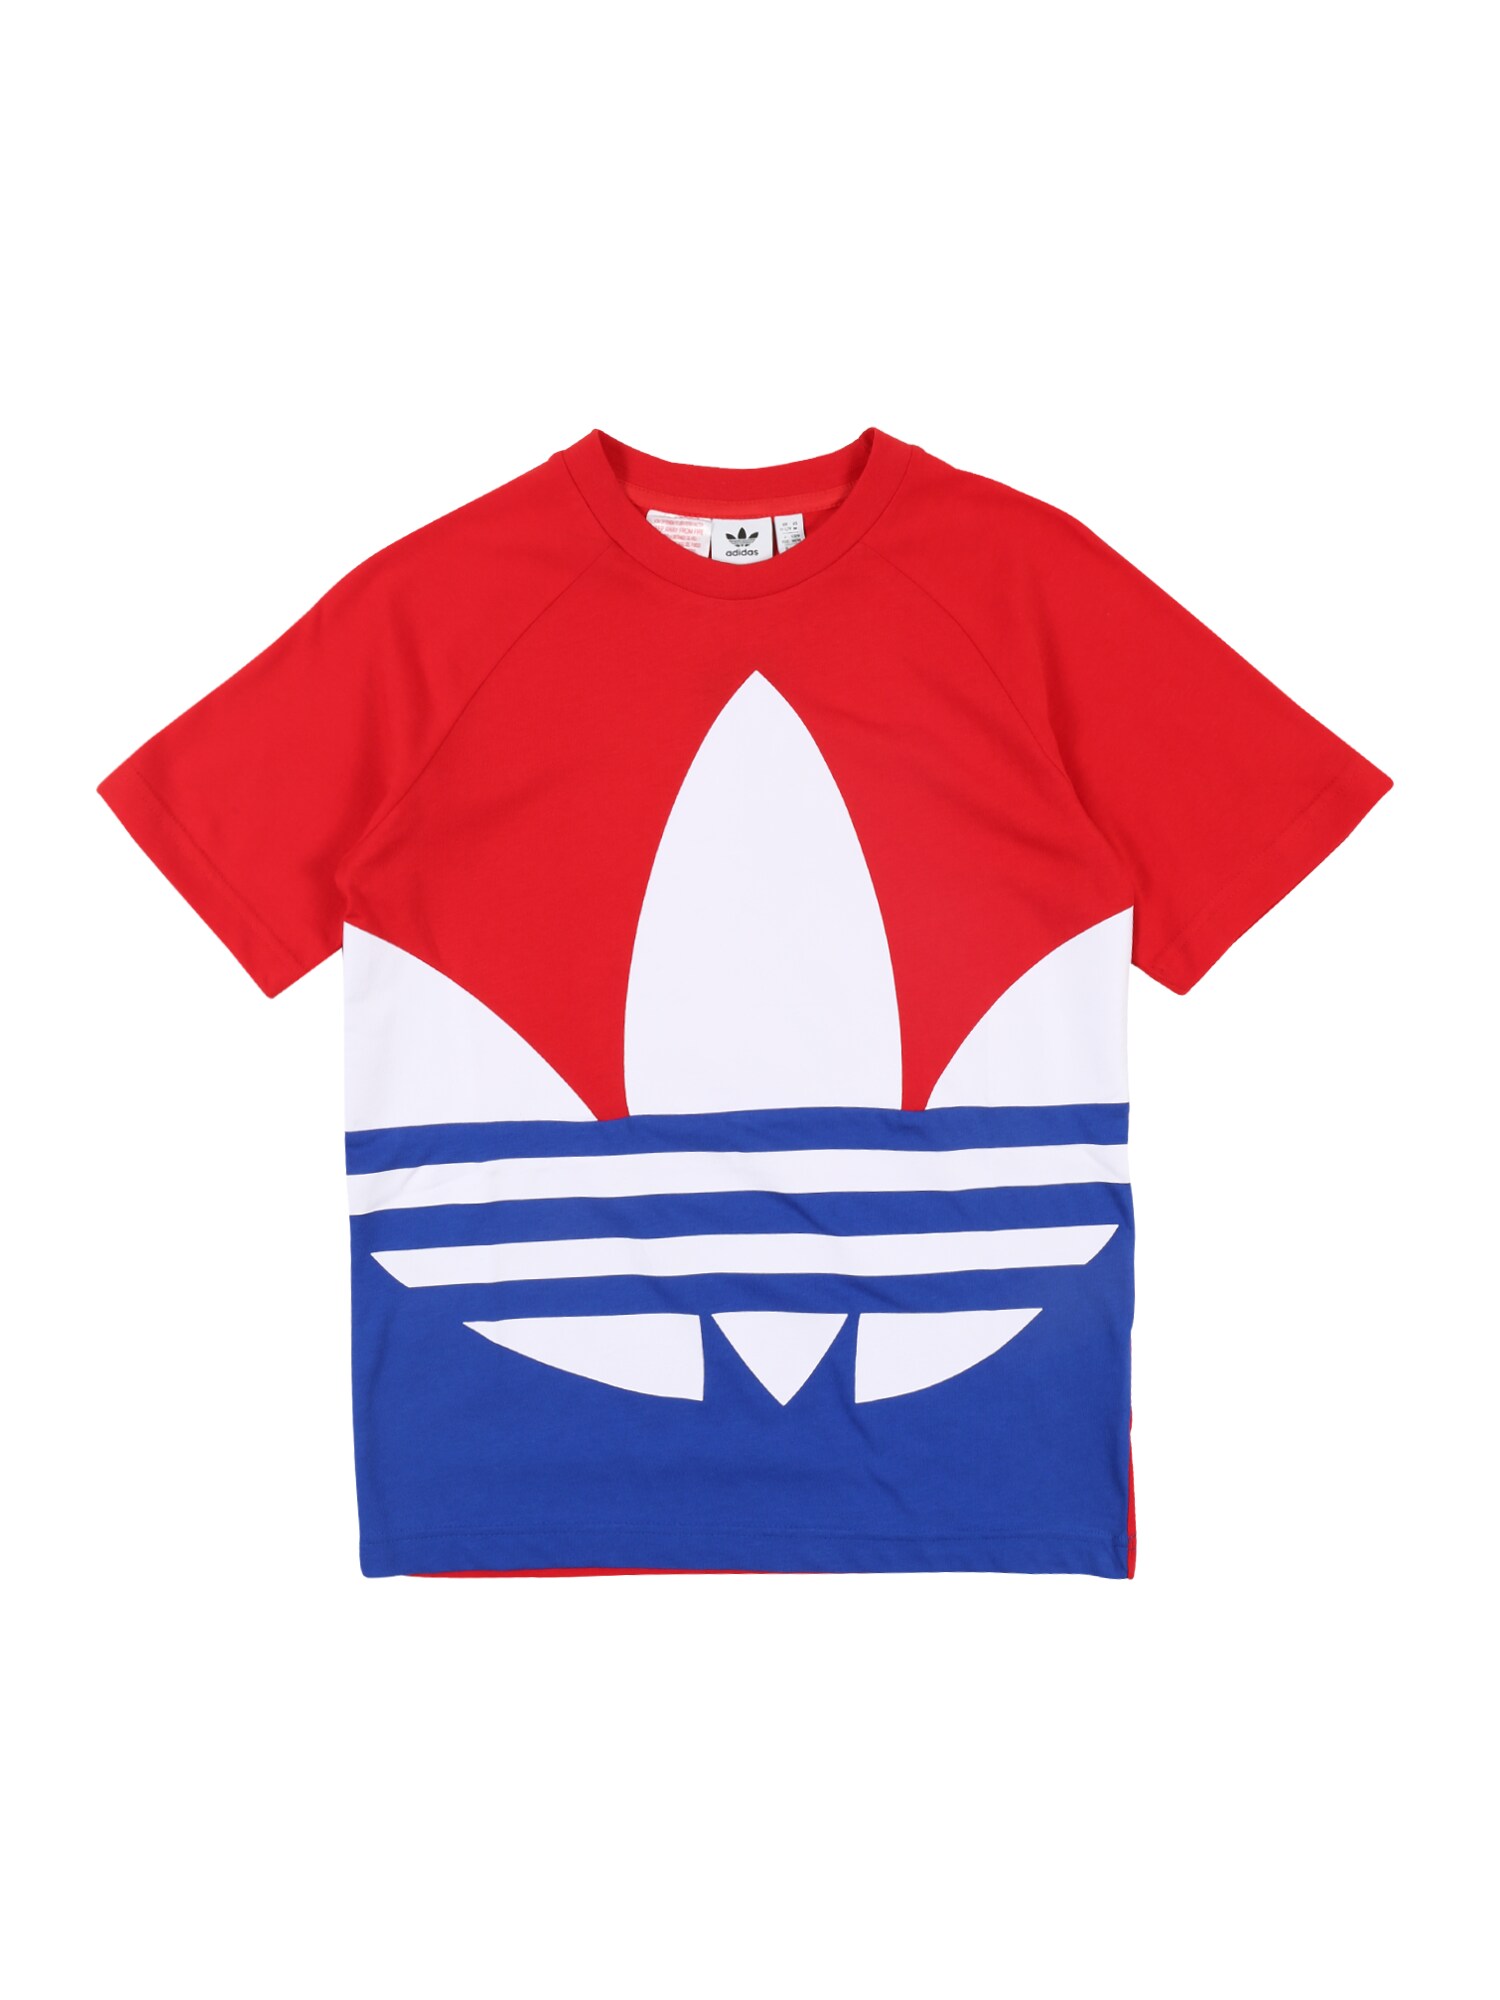 ADIDAS ORIGINALS Marškinėliai 'Big Trefoil'  raudona / balta / mėlyna